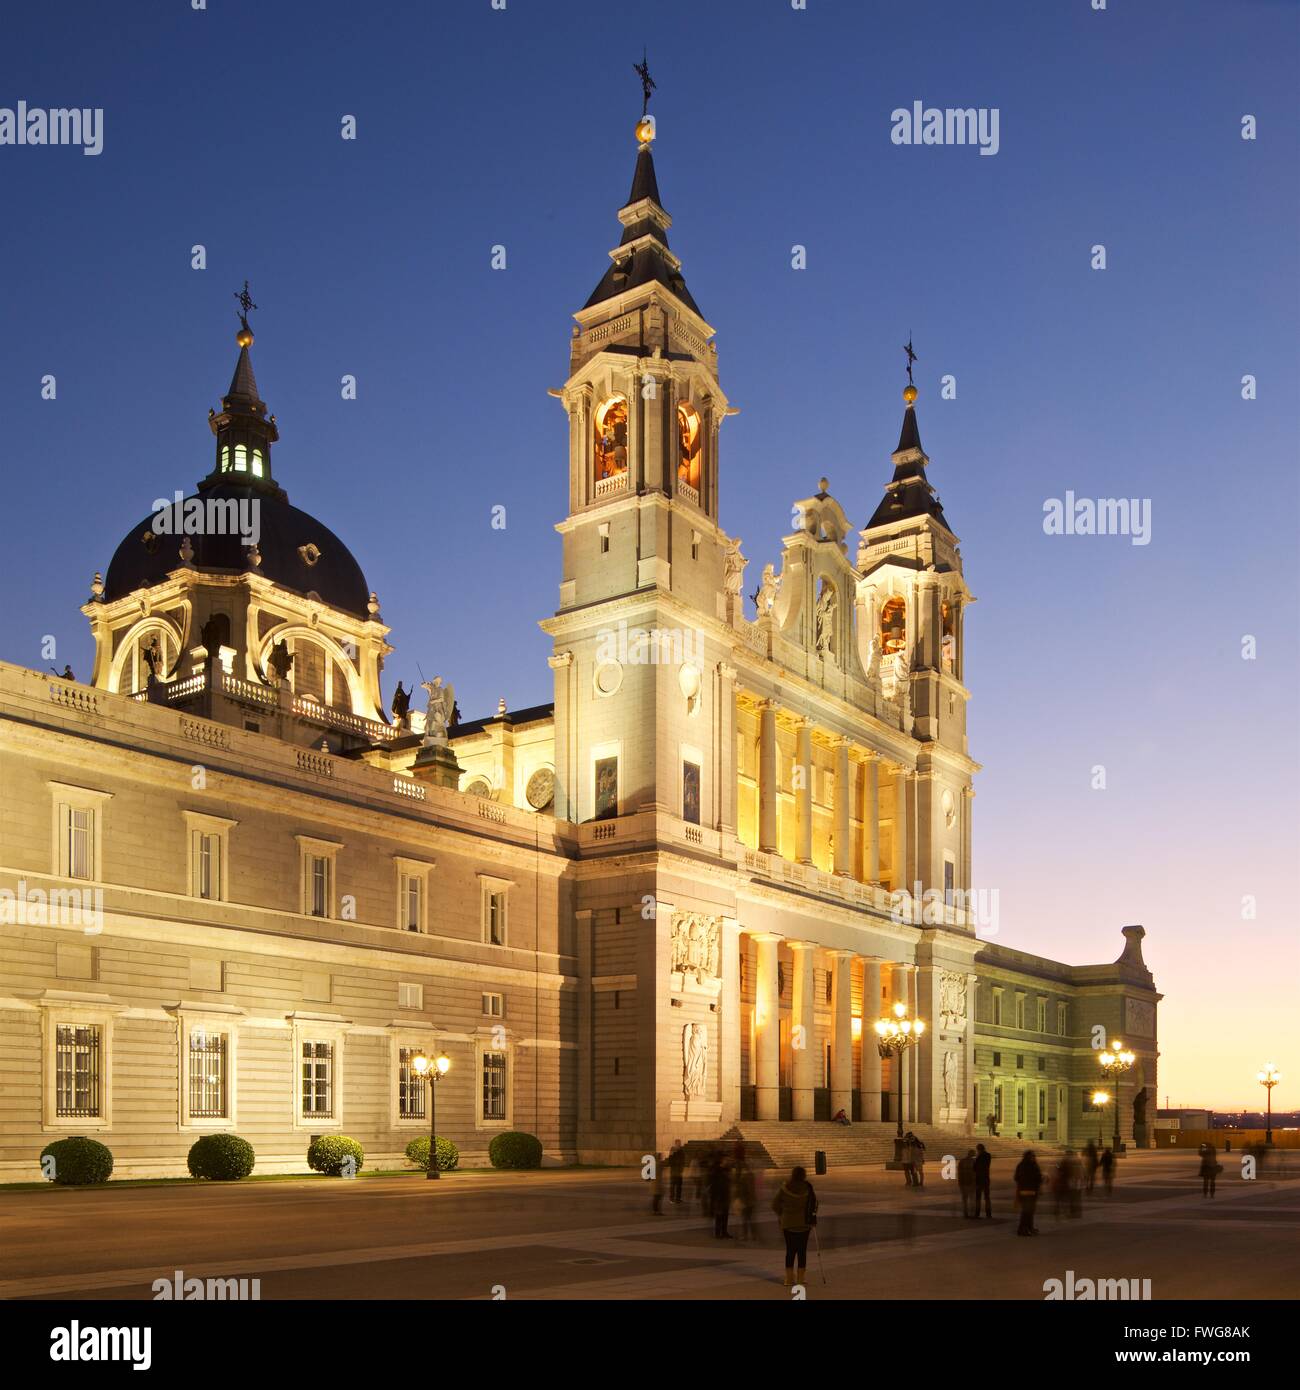 Una immagine di viaggio di Madrid presso la cattedrale di Almudena, preso al crepuscolo Foto Stock